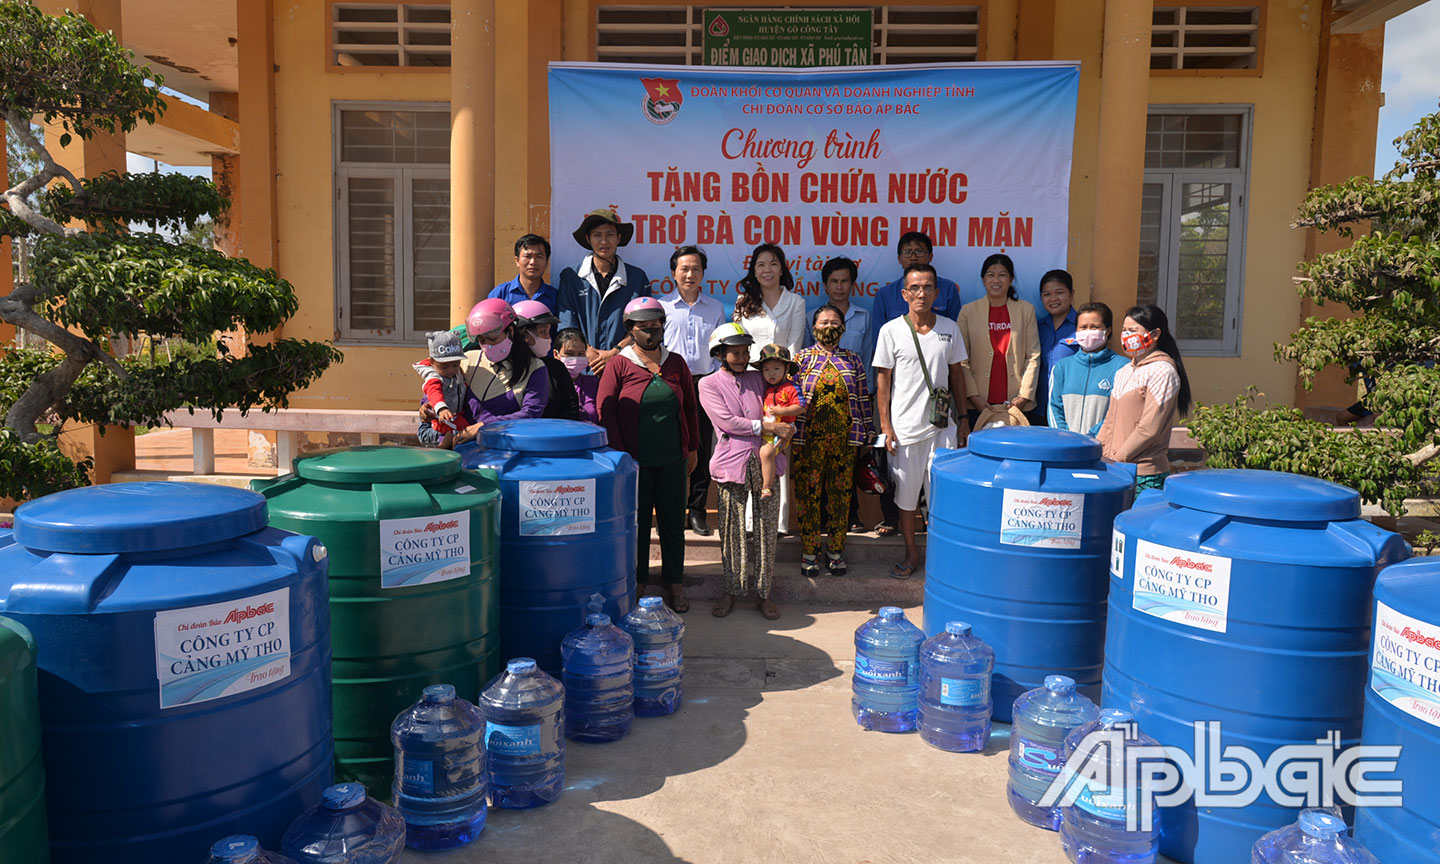 Đoàn khối phối hợp Chi đoàn Báo Ấp Bắc thực hiện Chương trình Tặng bồn nước cho bà con vùng hạn, mặn ở huyện Tân Phú Đông.